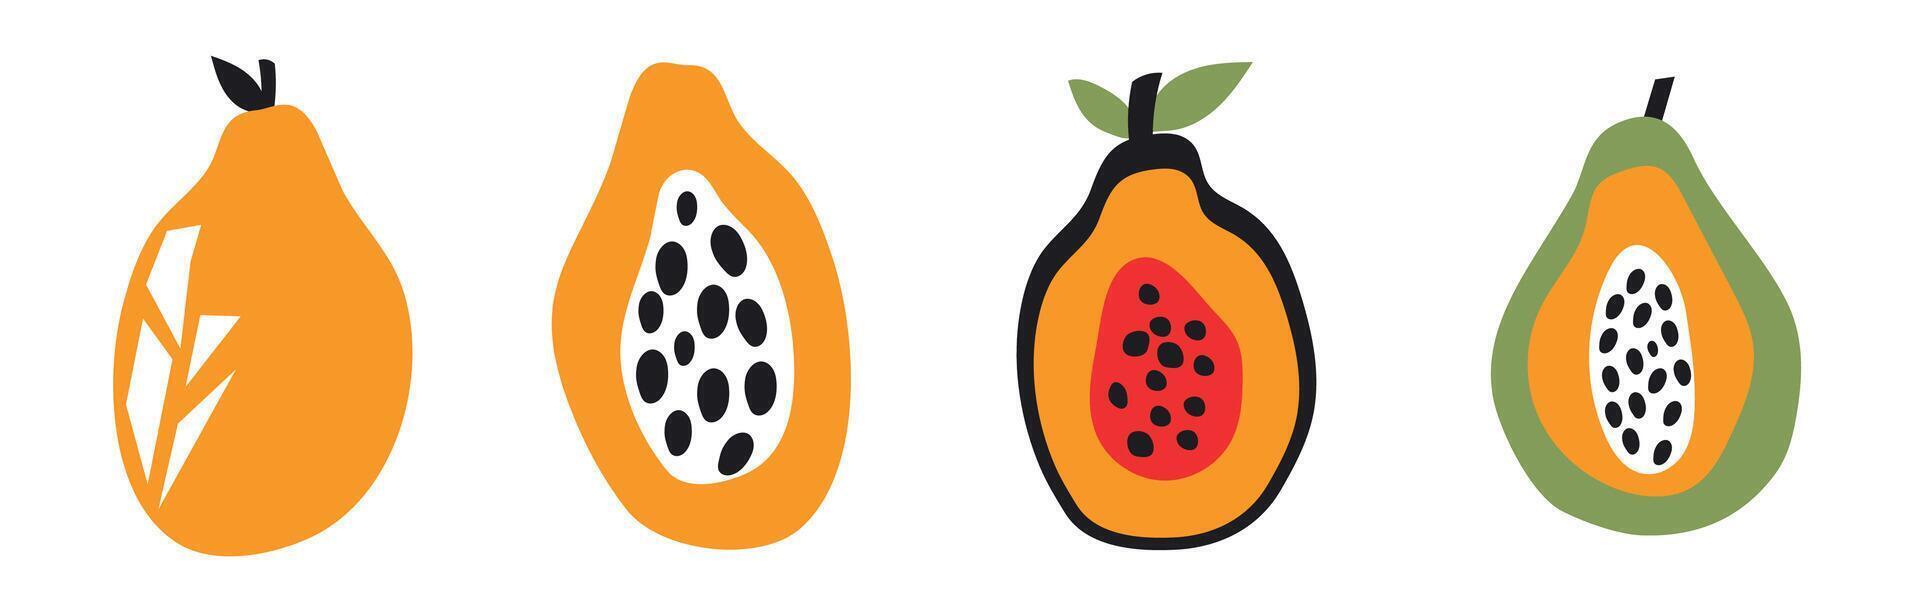 uppsättning av abstrakt papaya. enkel papaya. samtida trendig illustration. frukt samling design för interiör, affisch, omslag, baner. Allt element är isolerat. vektor